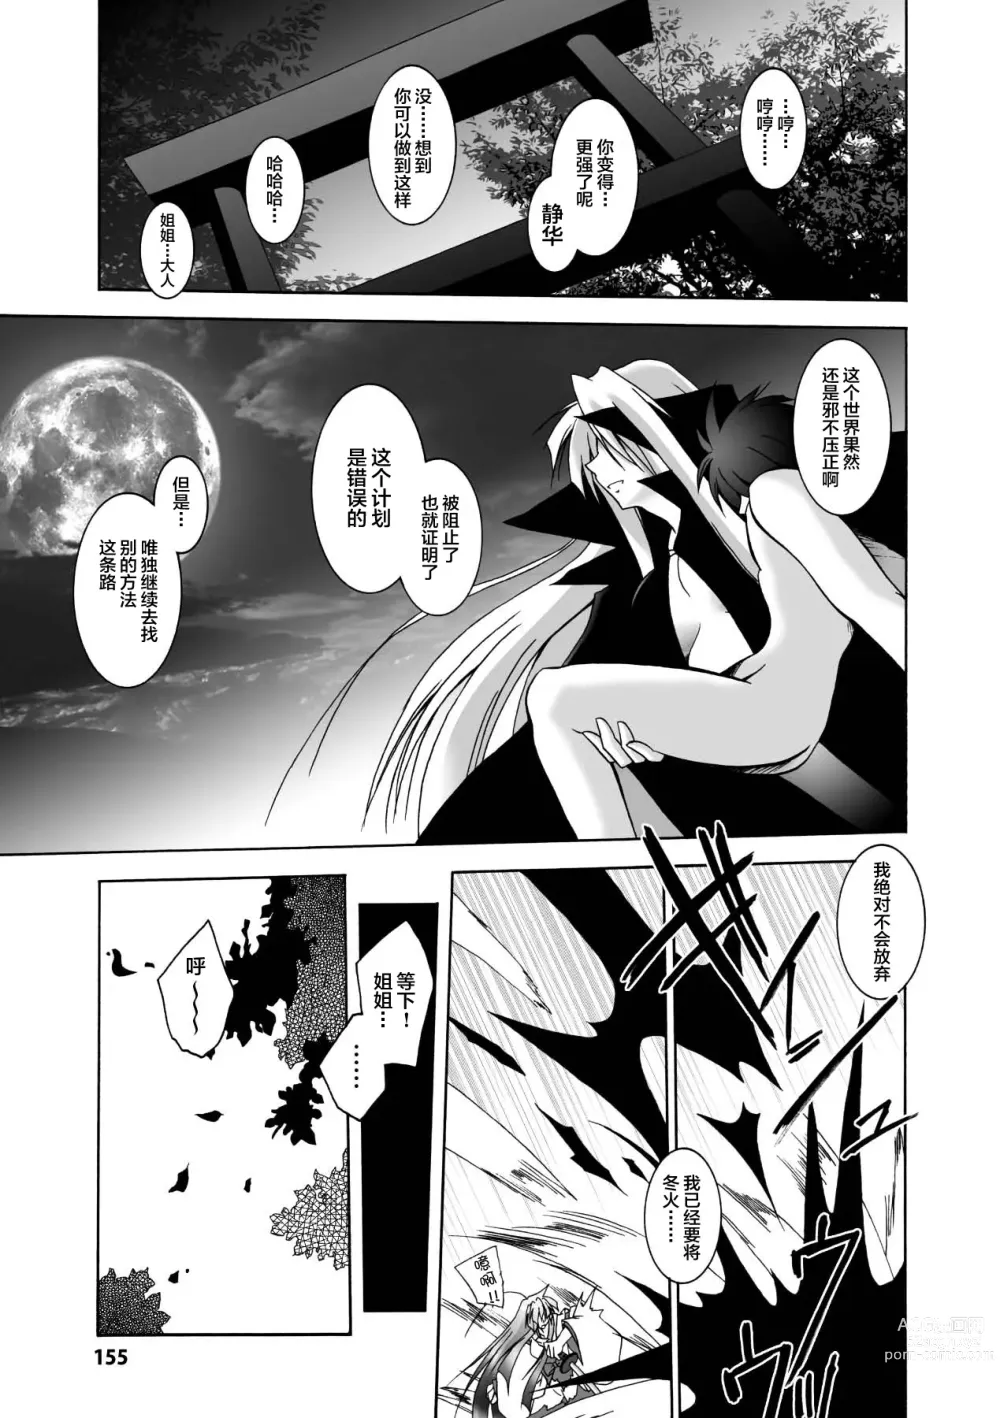 Page 155 of manga Matantei Toudou Shizuka no Inyou Jikenbo